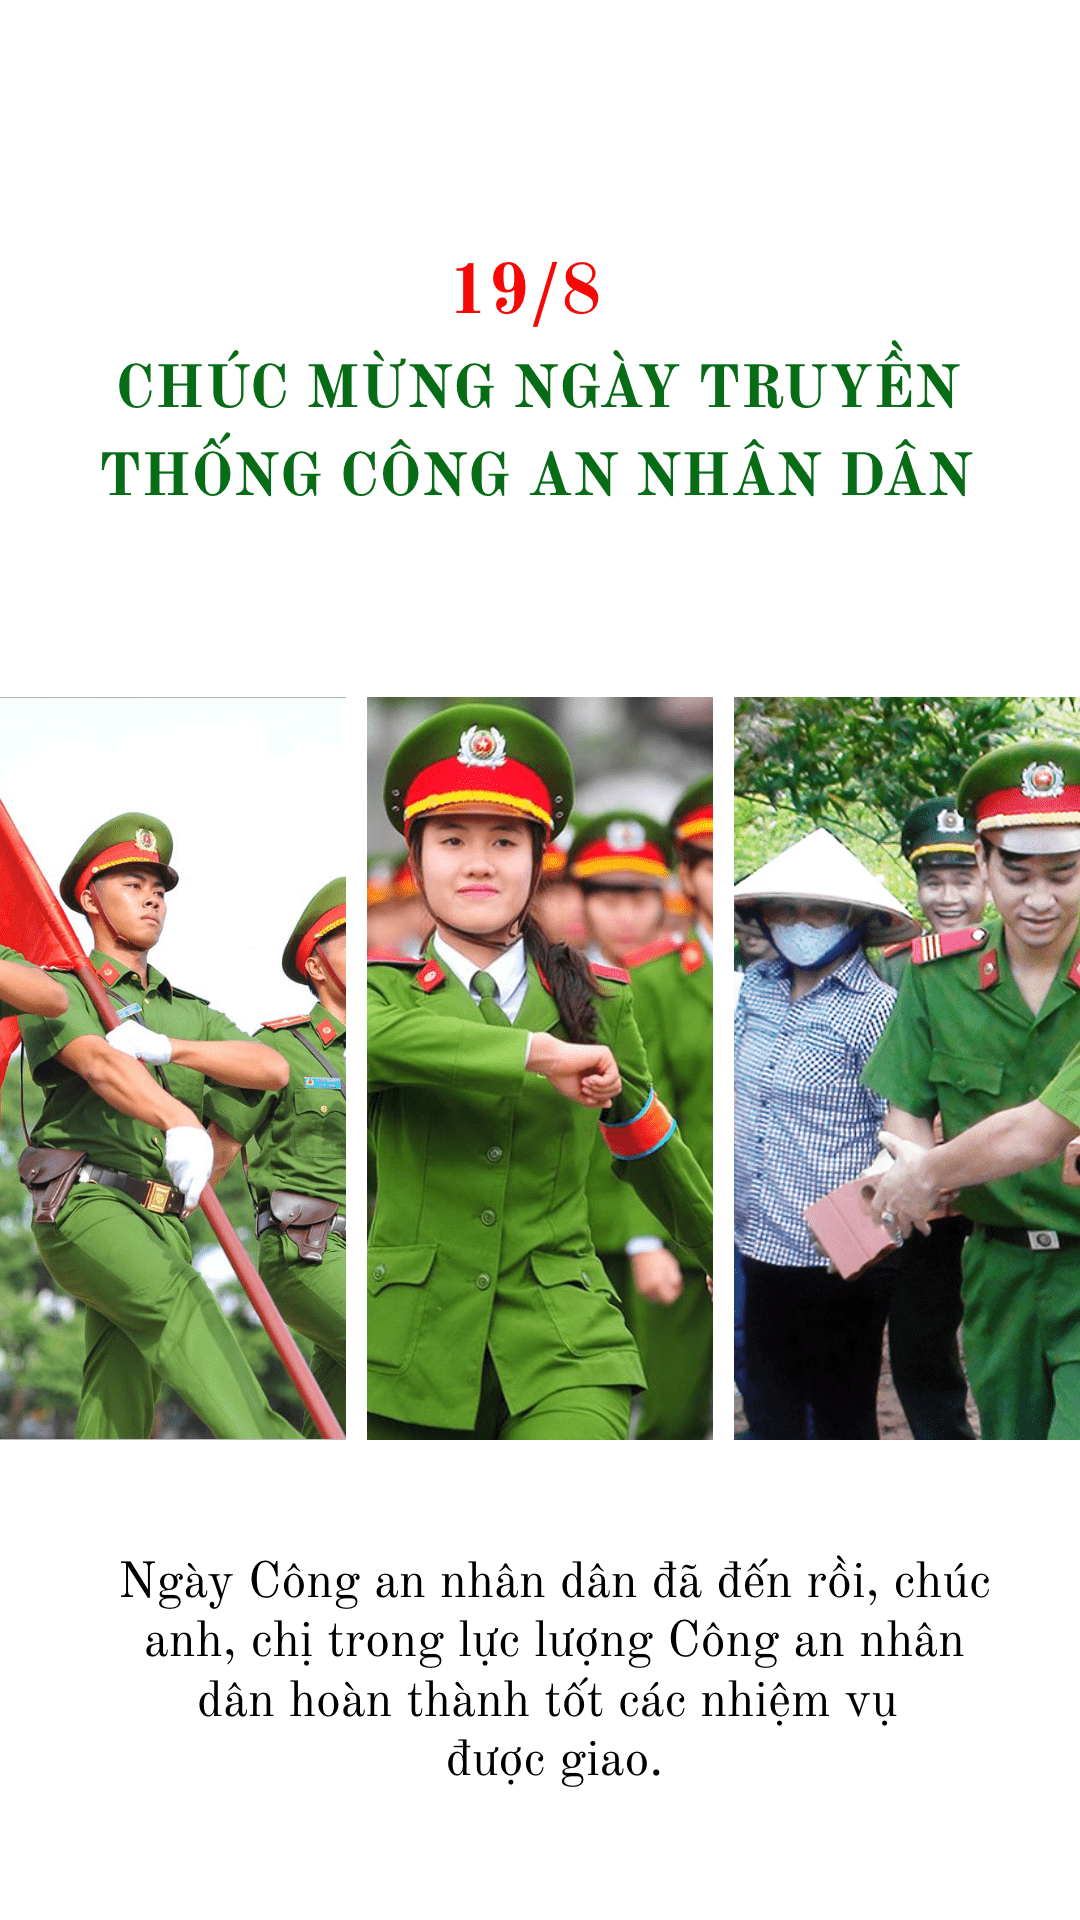 Ngày 19/8: Ngày này đánh dấu ngày kỷ niệm quan trọng trong lịch sử Việt Nam. Hãy cùng xem những hình ảnh ý nghĩa đánh dấu sự kiện này như người dân tưng bừng ăn mừng trên khắp đất nước, các lễ kỷ niệm,... để cảm nhận lại tinh thần đoàn kết và sự kiên trung của dân tộc Việt Nam.